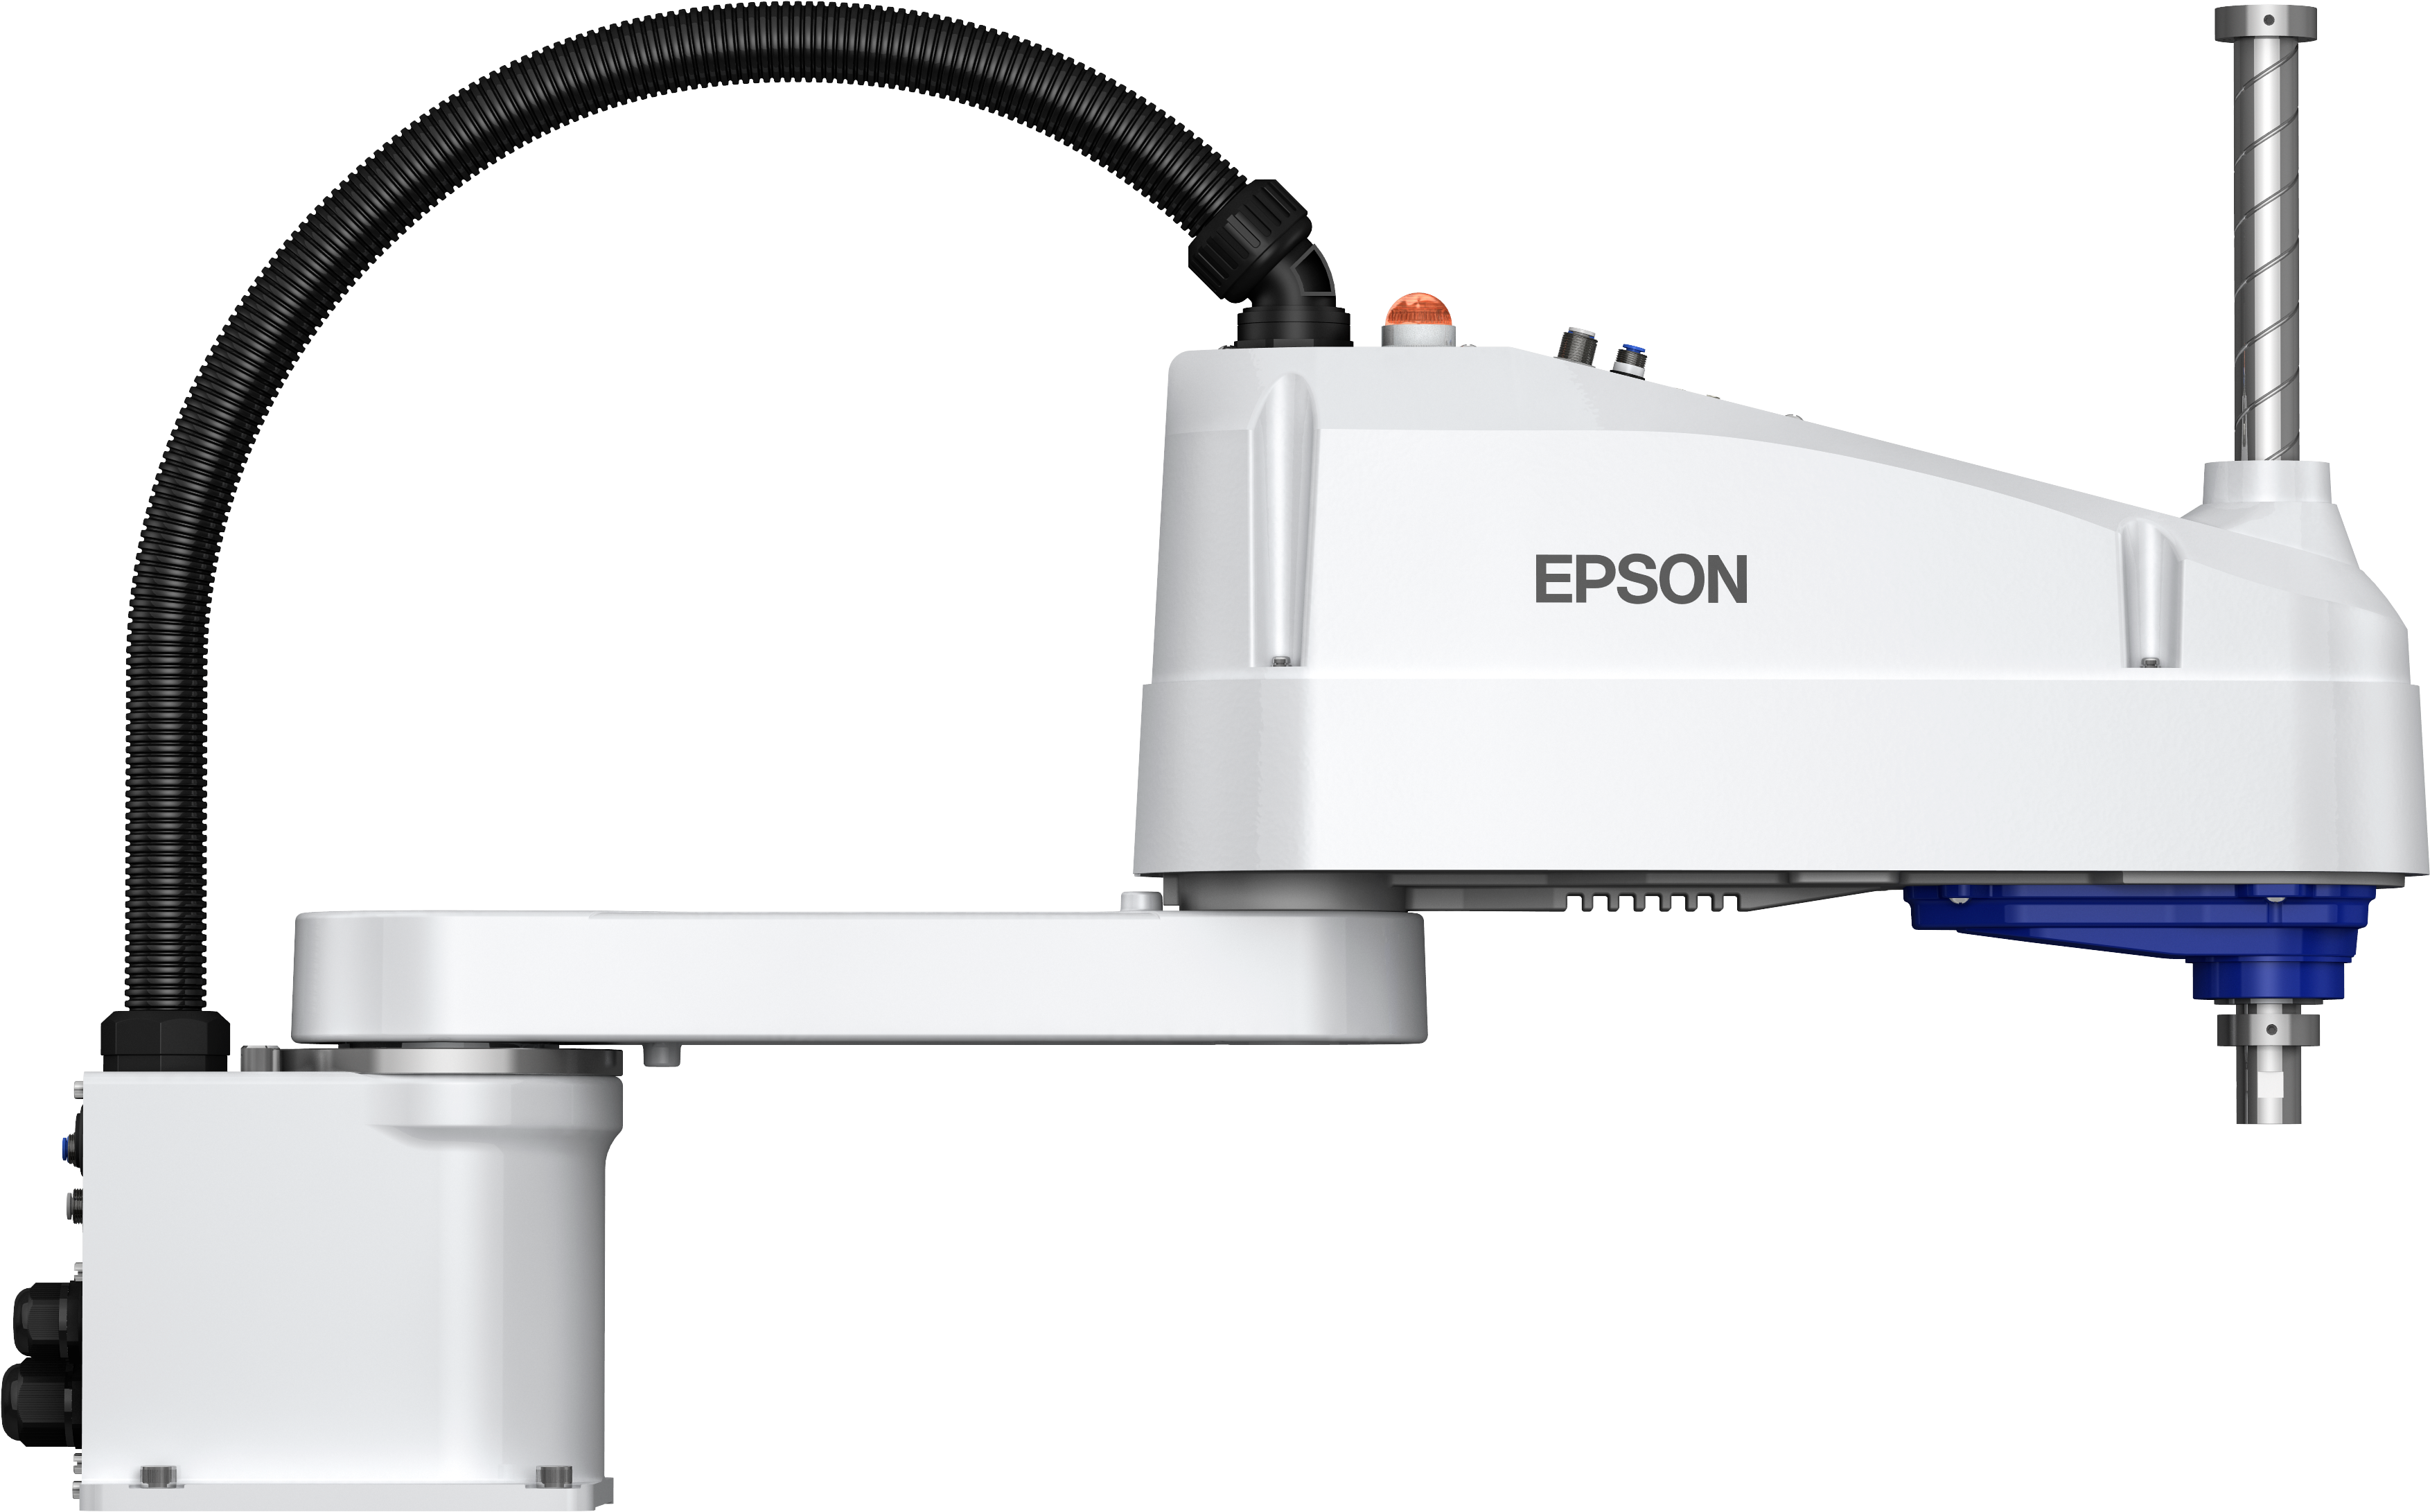 Epson LS10-B703S (estándar) | Scara LS | Robots | Productos | Epson España